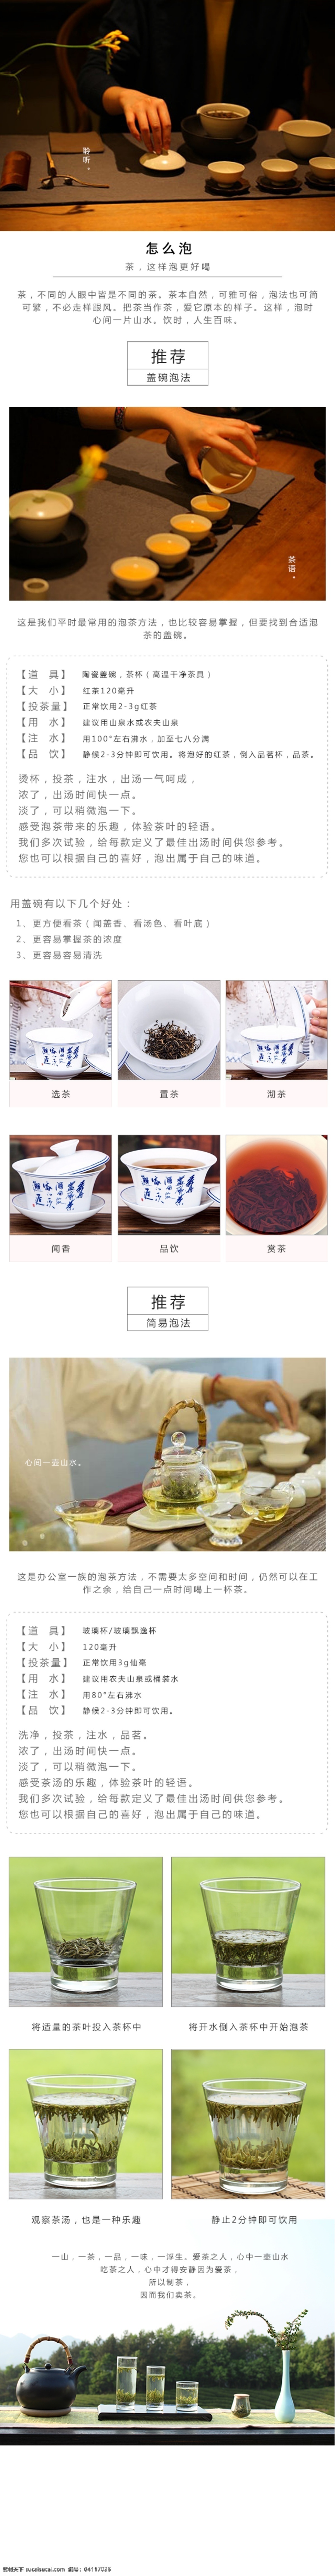 泡茶 工艺 微 信 详情 页 自定义页面 微信端详情页 泡茶工艺 红茶盖碗茶 手机端页面 白色